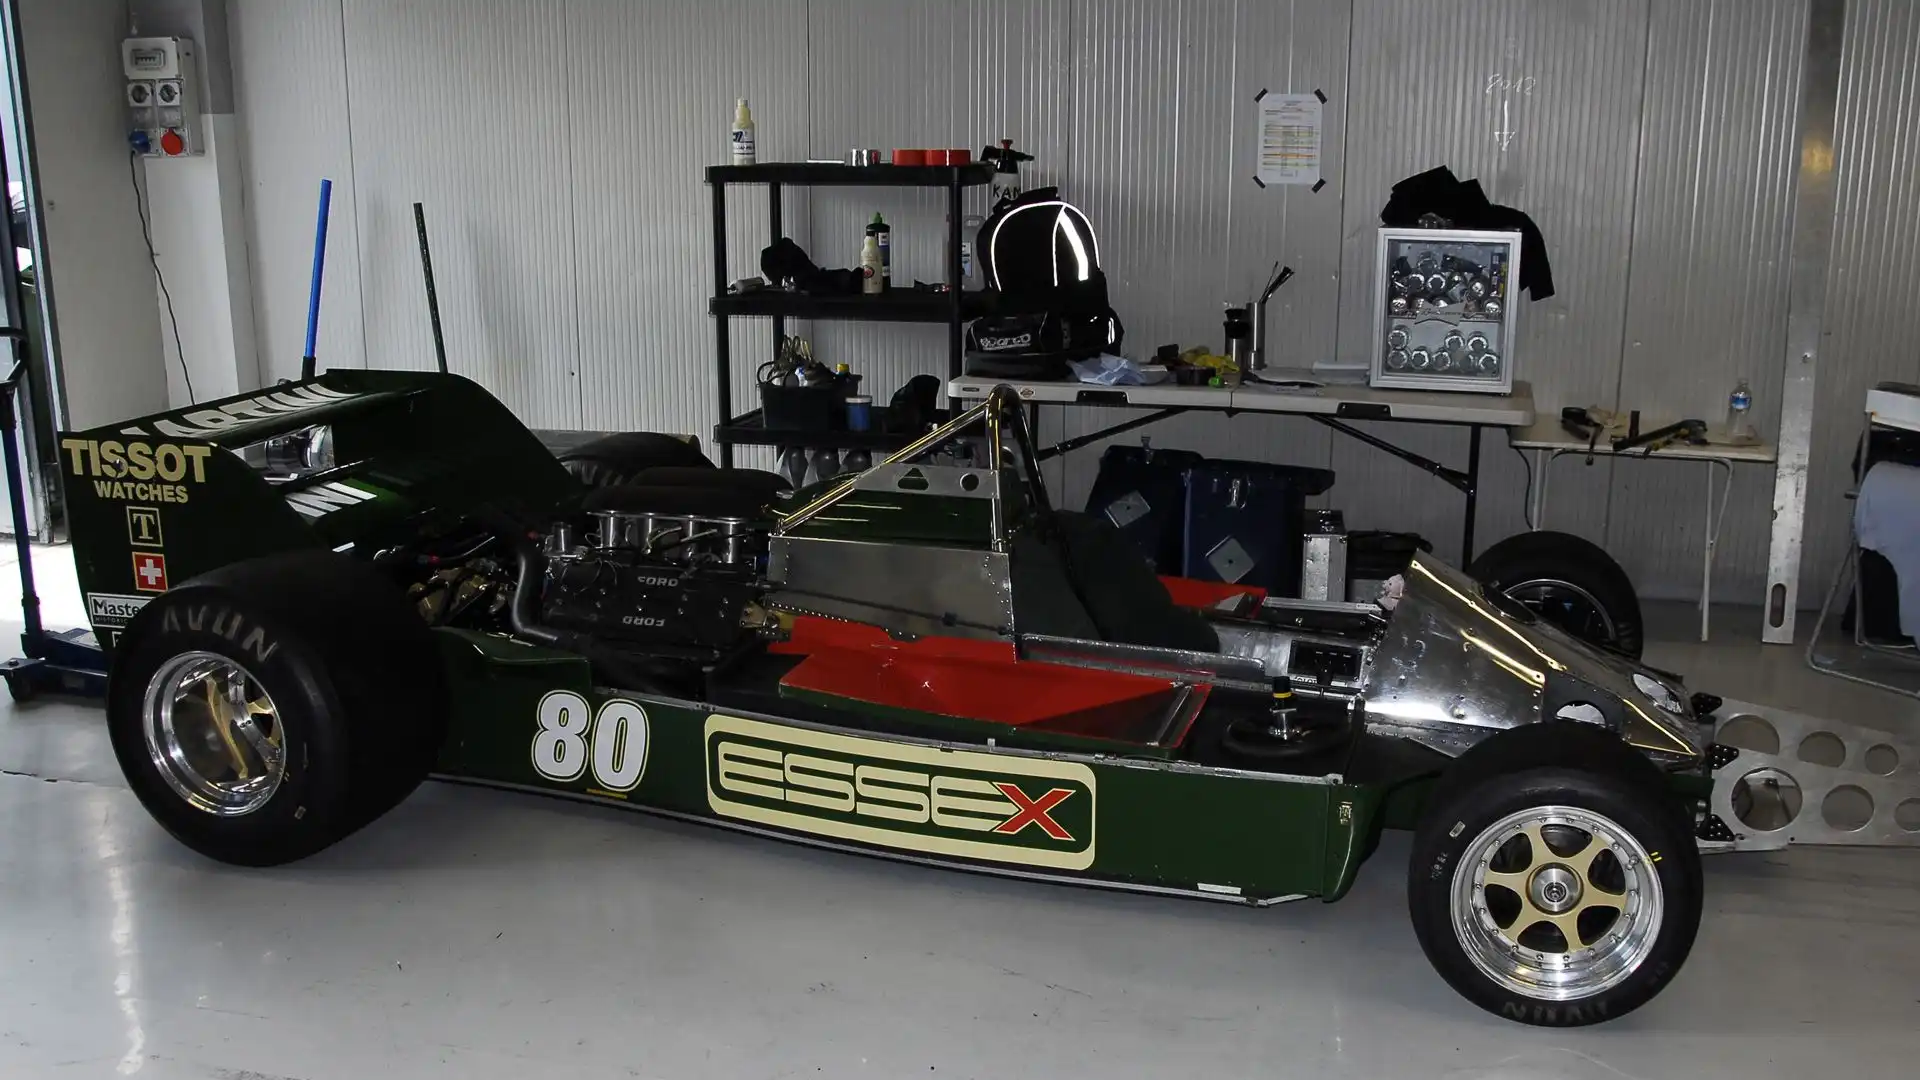 La Lotus 80 venne accantonata e Andretti tornò al volante della Lotus 79